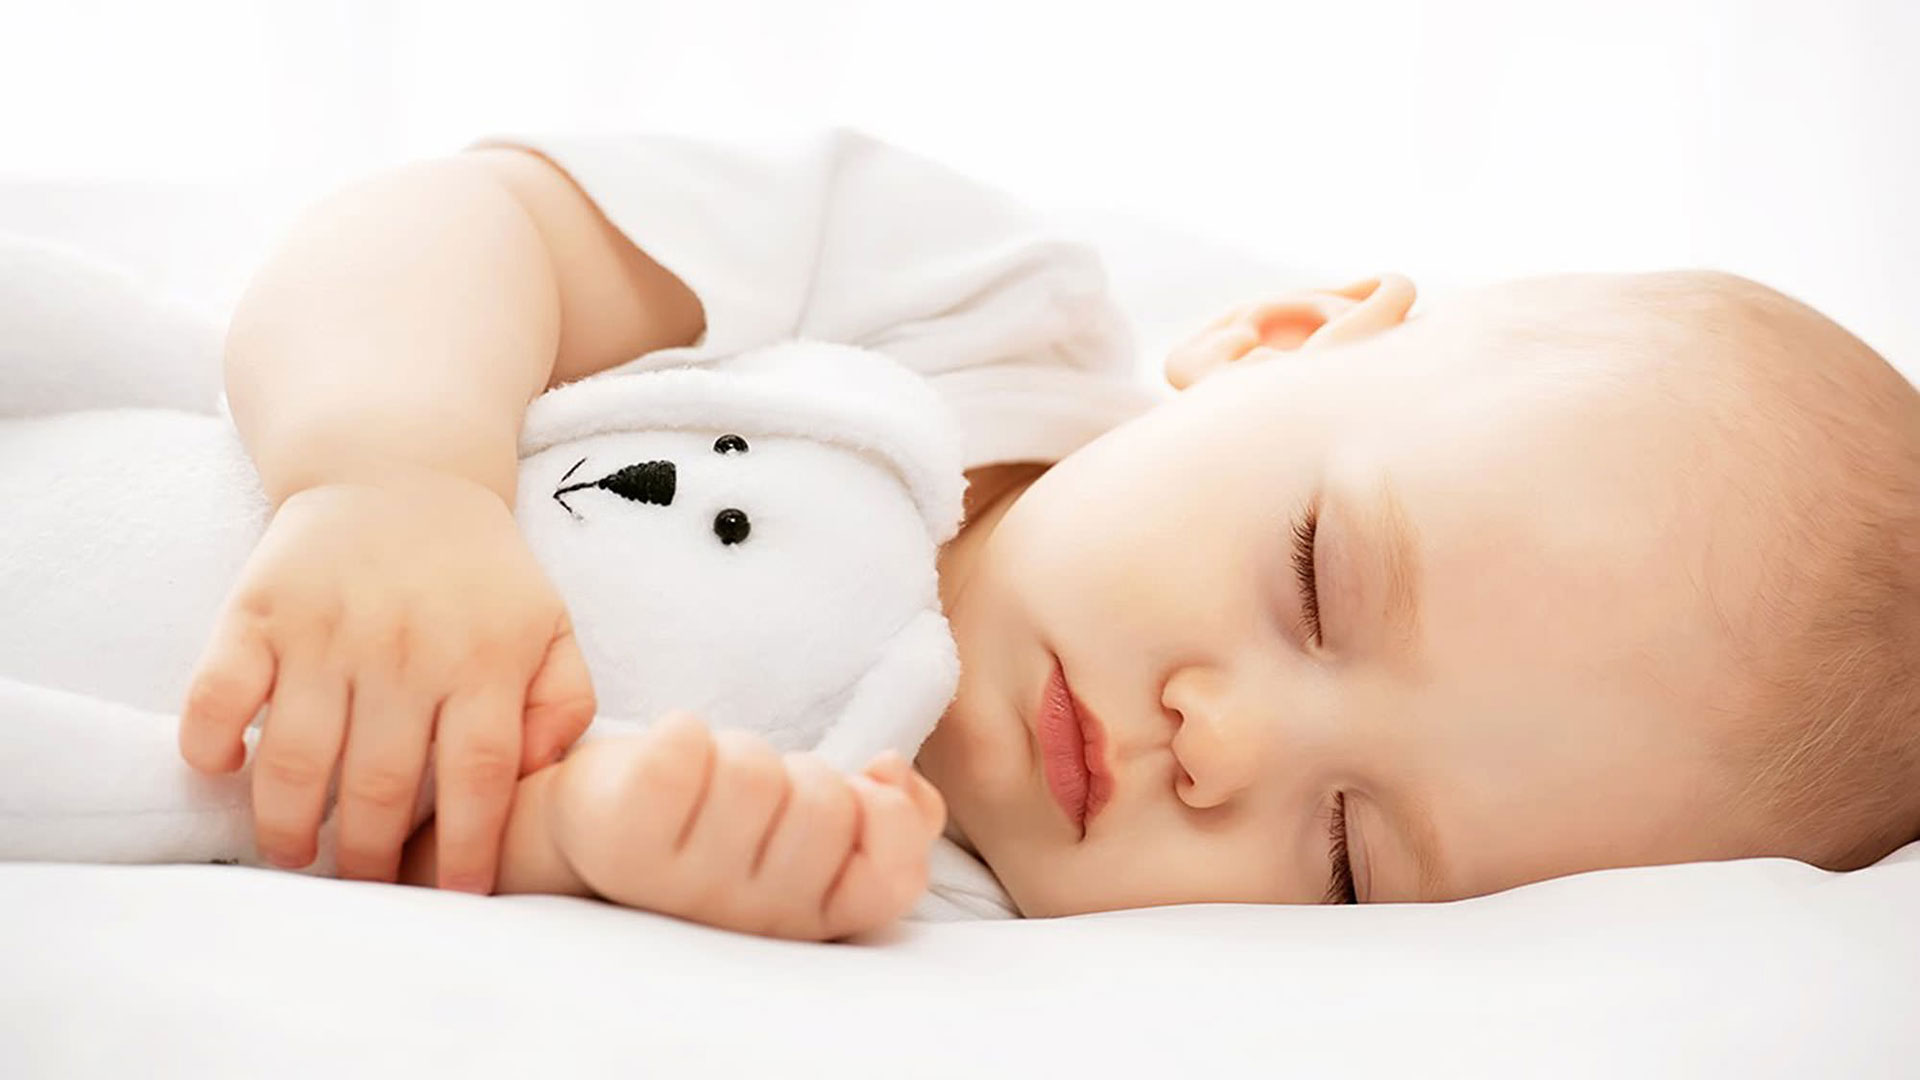 Linea Baby - Materasso Lattice Per i bambini - Materasso Espanso per i bambini - Guanciale Antiacaro per i bambini  x materasso lecce divano opinioni 